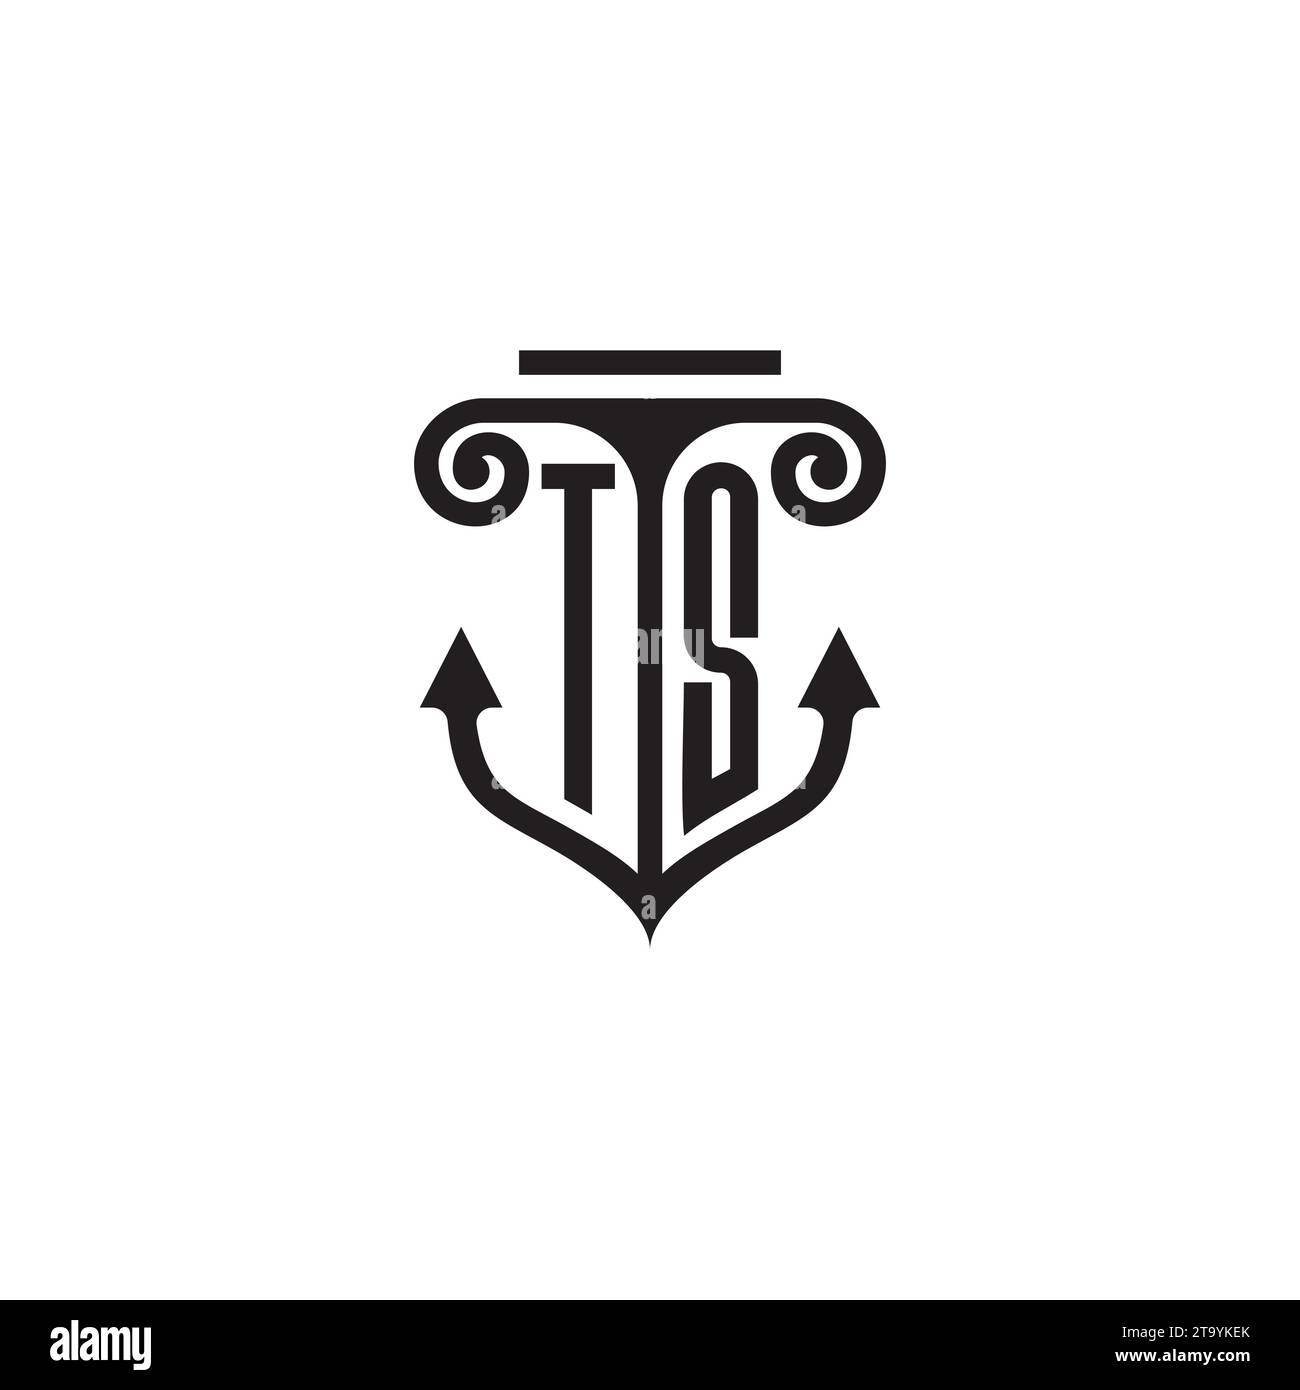 TS pillar and anchor combination concept logo in high quality design Stock Vector